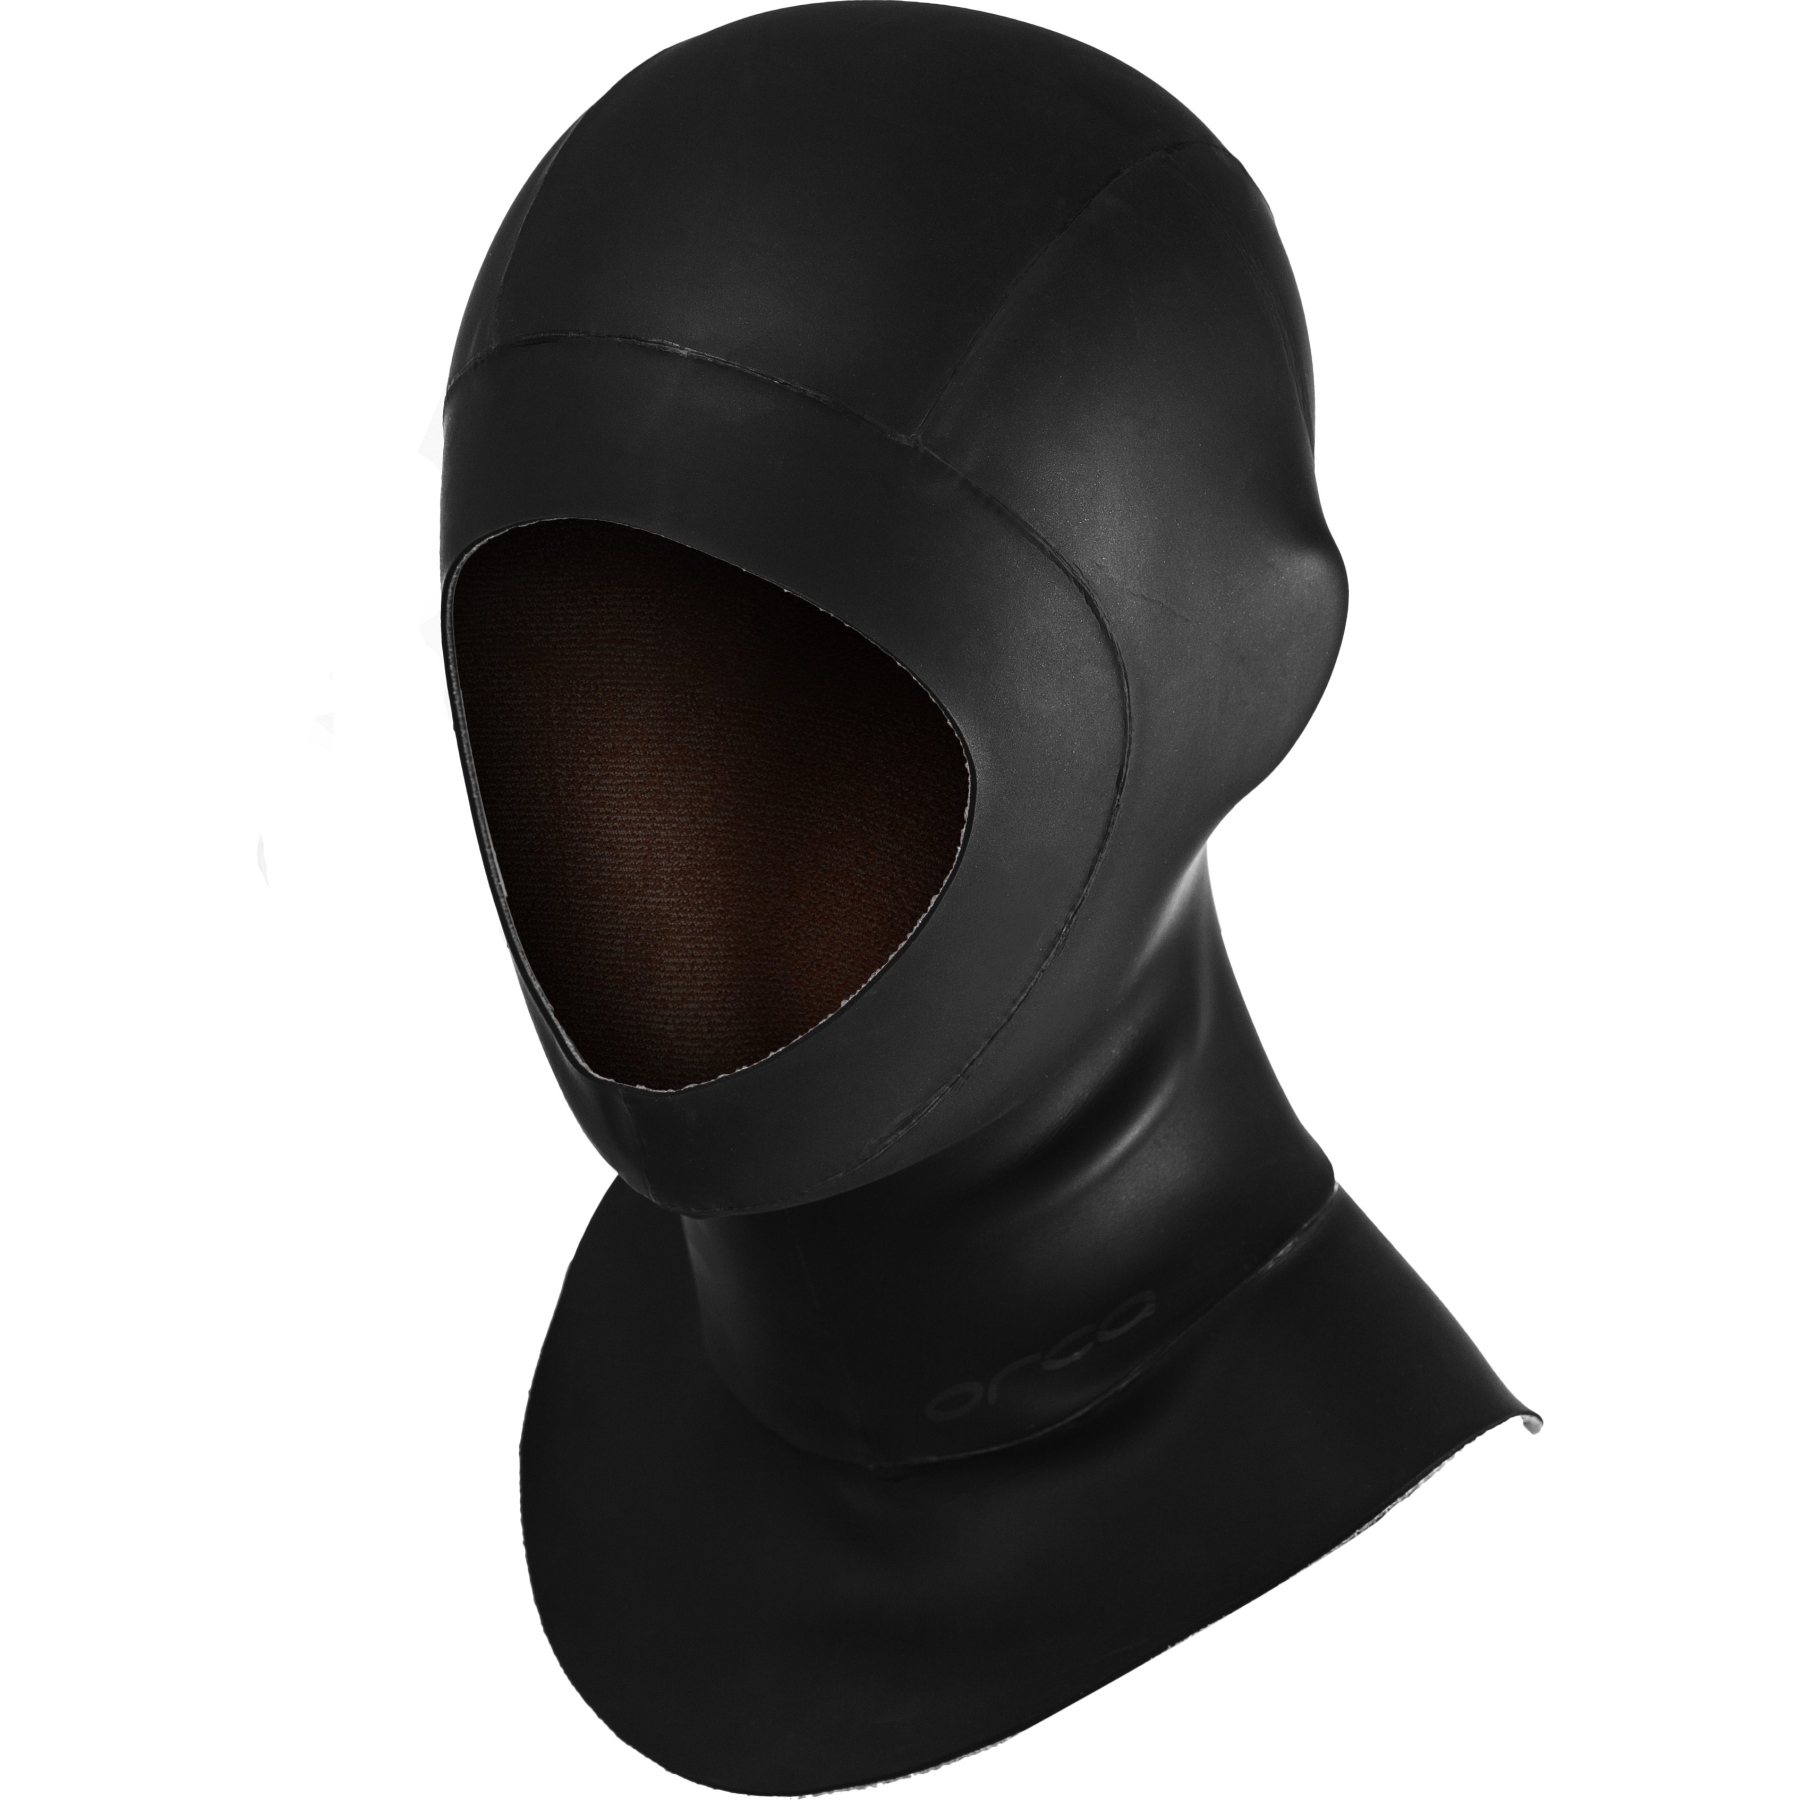 Productfoto van Orca Thermal Head Cover Neopreen Badmuts - zwart/zilver